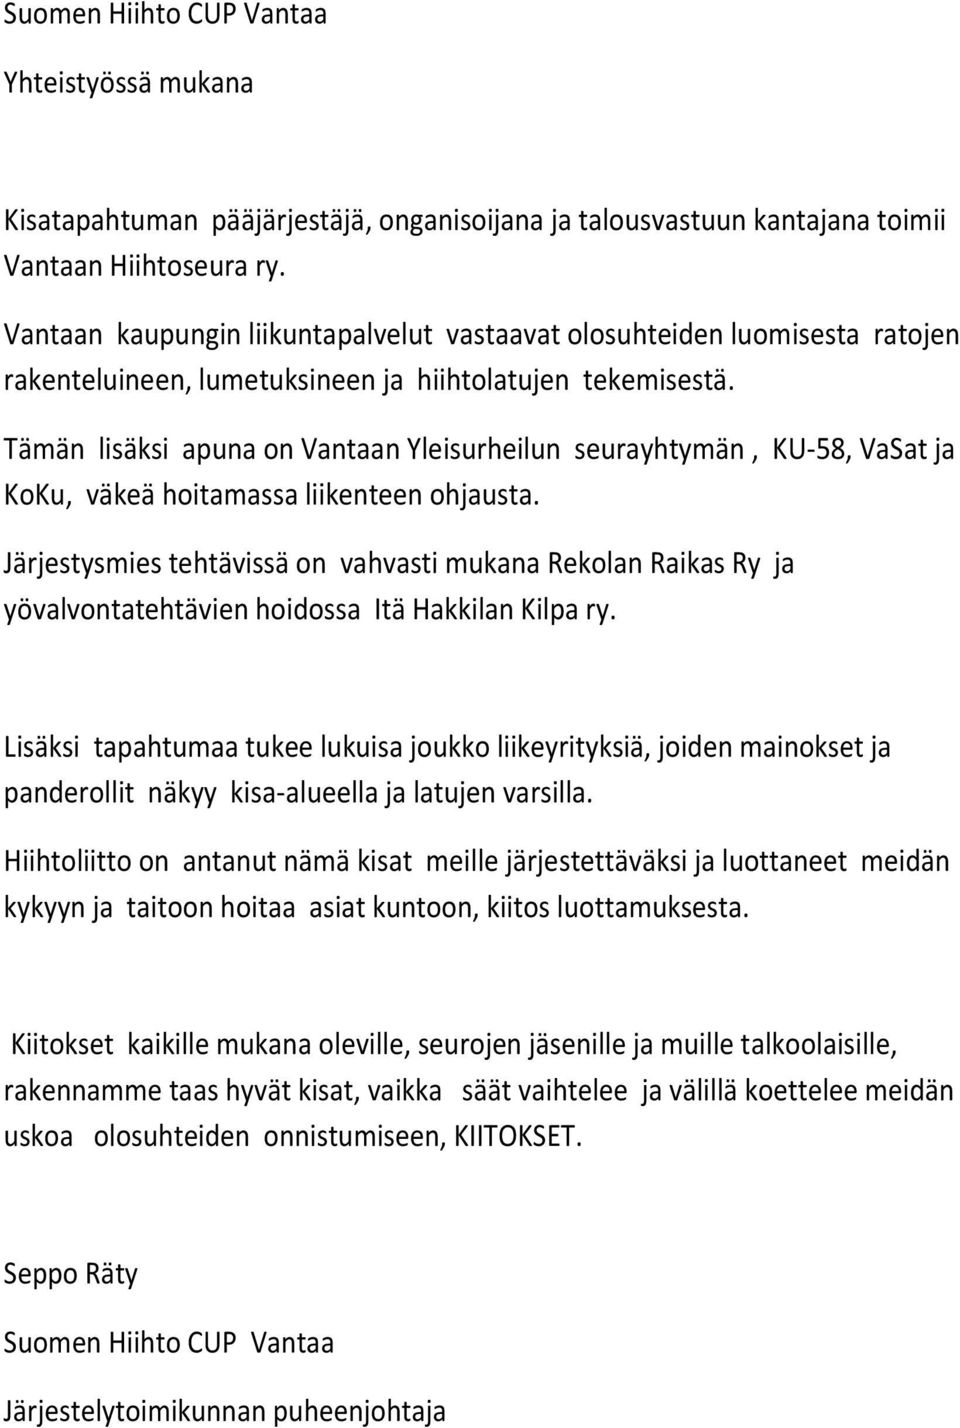 Tämän lisäksi apuna on Vantaan Yleisurheilun seurayhtymän, KU-58, VaSat ja KoKu, väkeä hoitamassa liikenteen ohjausta.